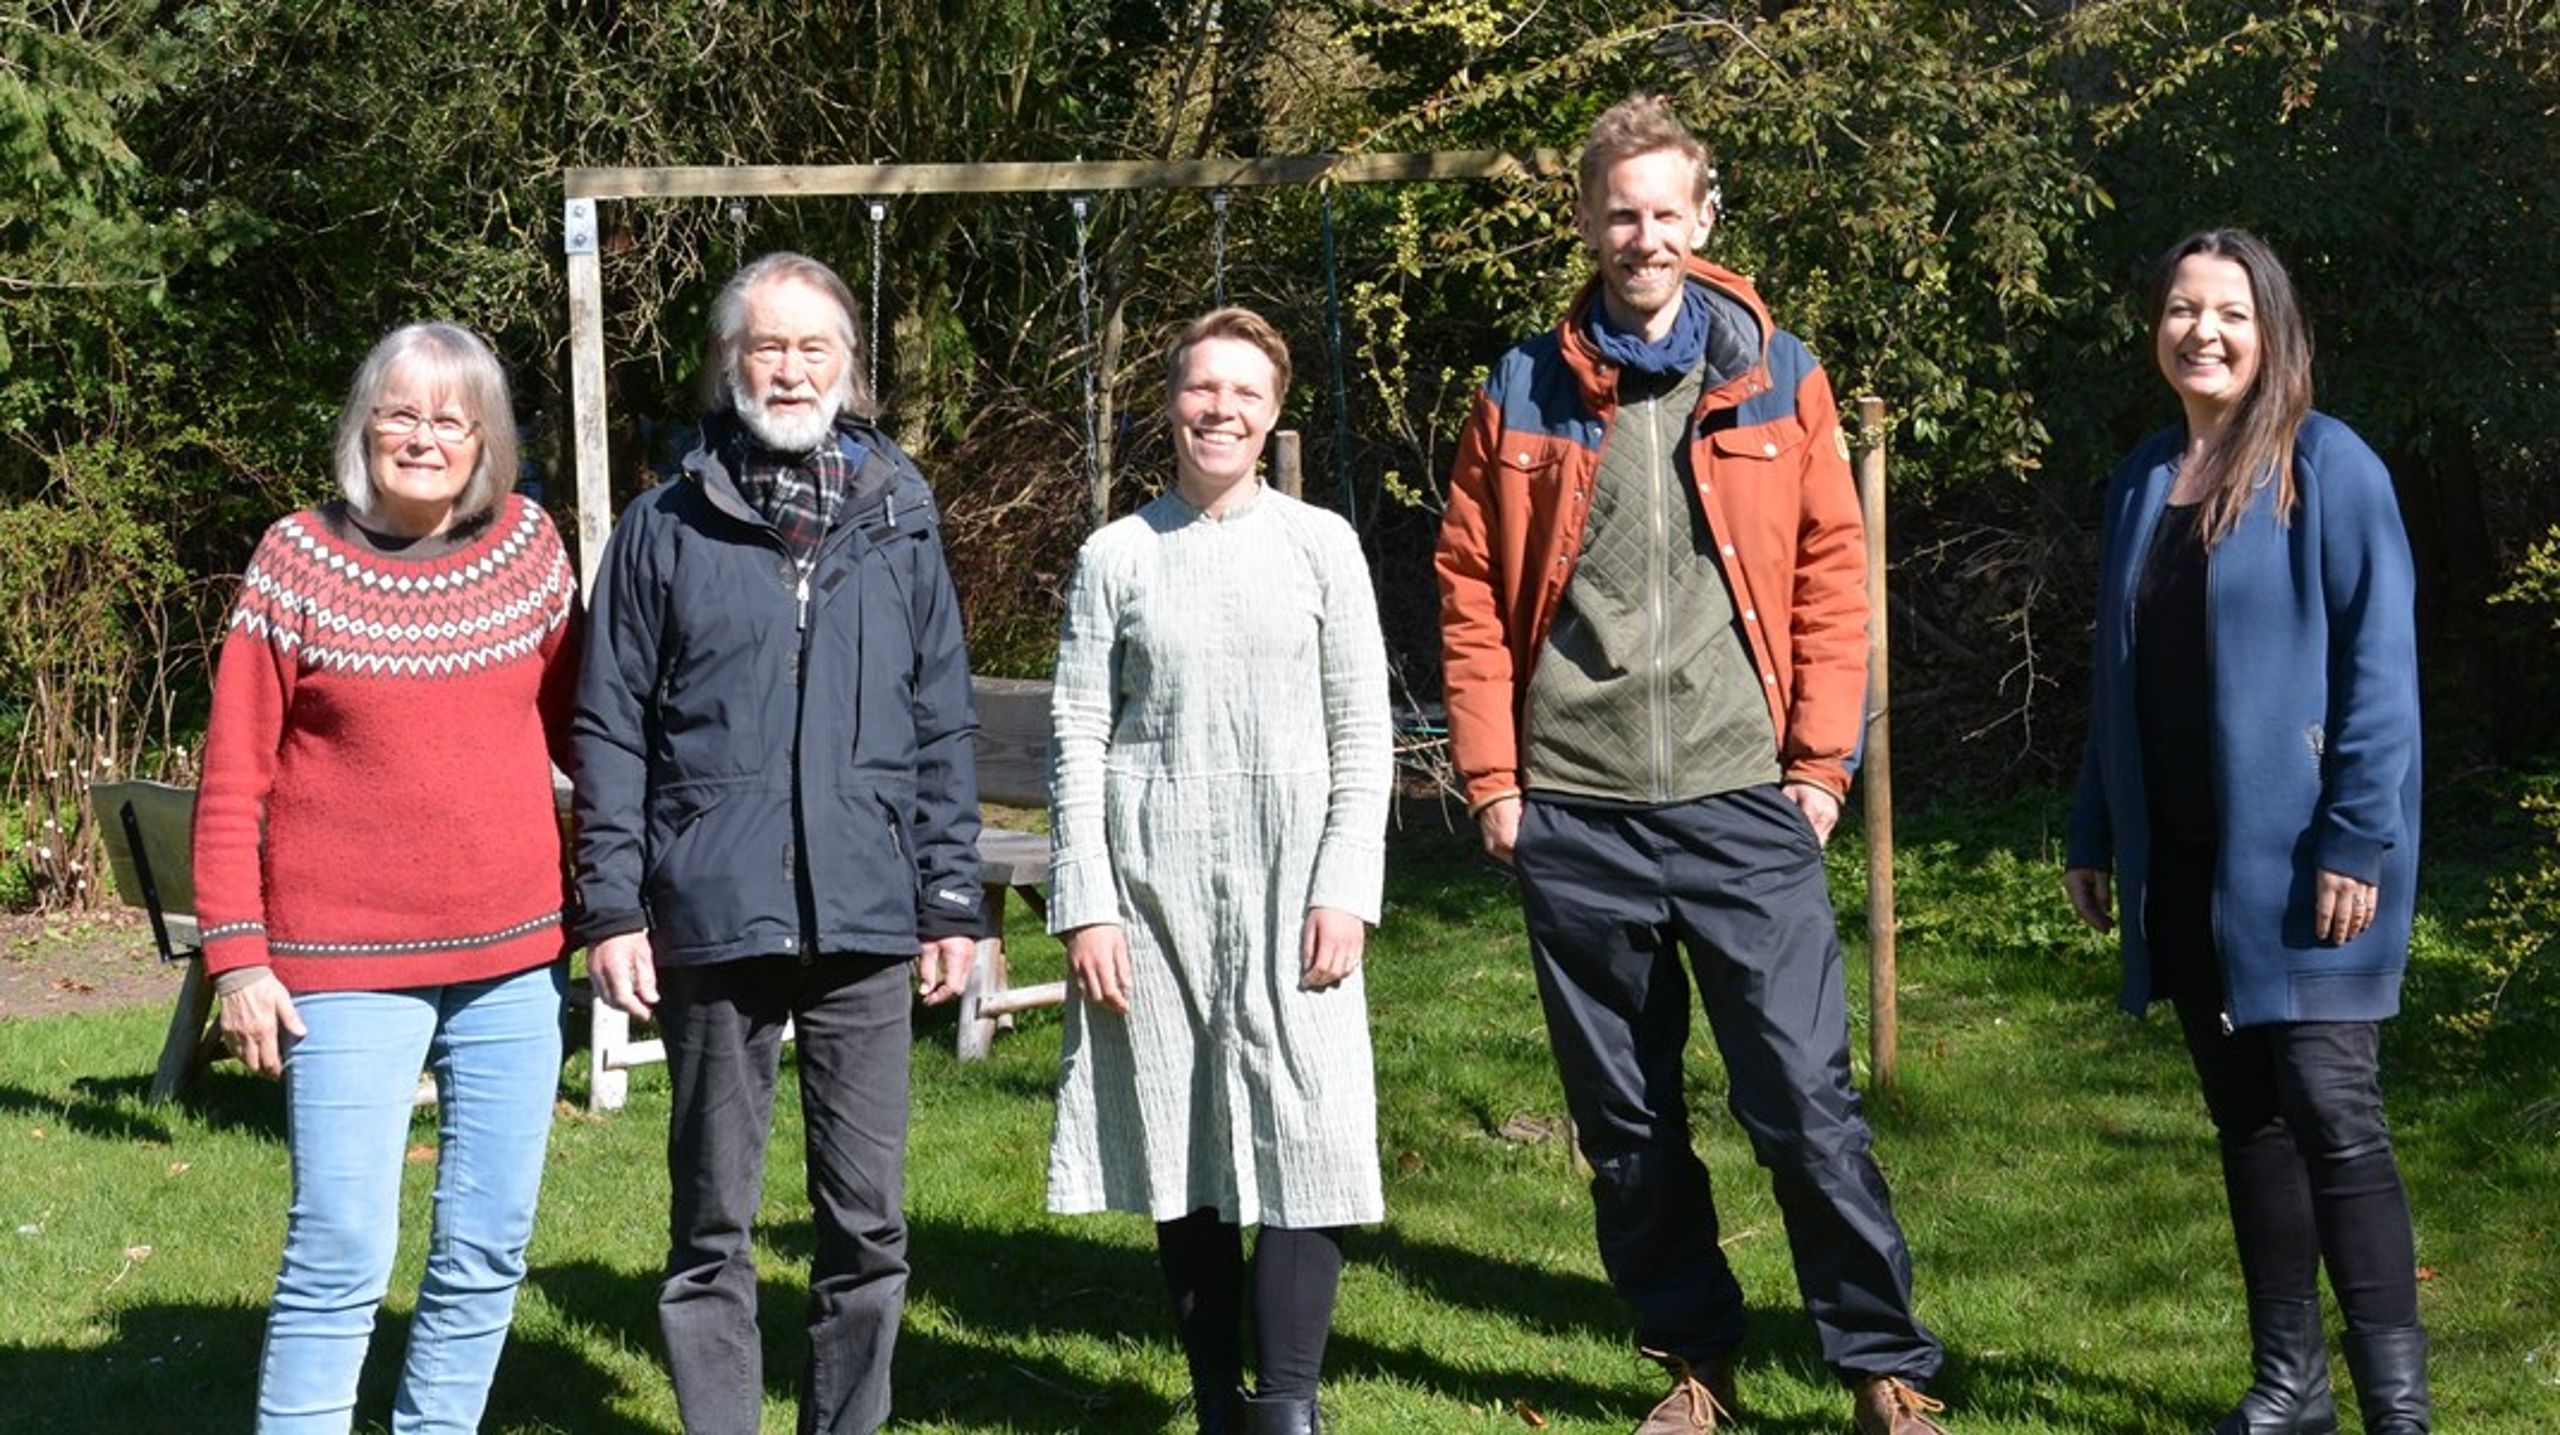 I samarbejde med Furesø Kommune har Danmarks Naturfredningsforening og lokale ildsjæle iværksat initiativet Vilde haver. På billedet ses Hanne Juel (DN), Carsten Juel (DN), Louise Rønne, Mikkel Nygaard Hansen og Marie Høybye (lokale initiativtagere).